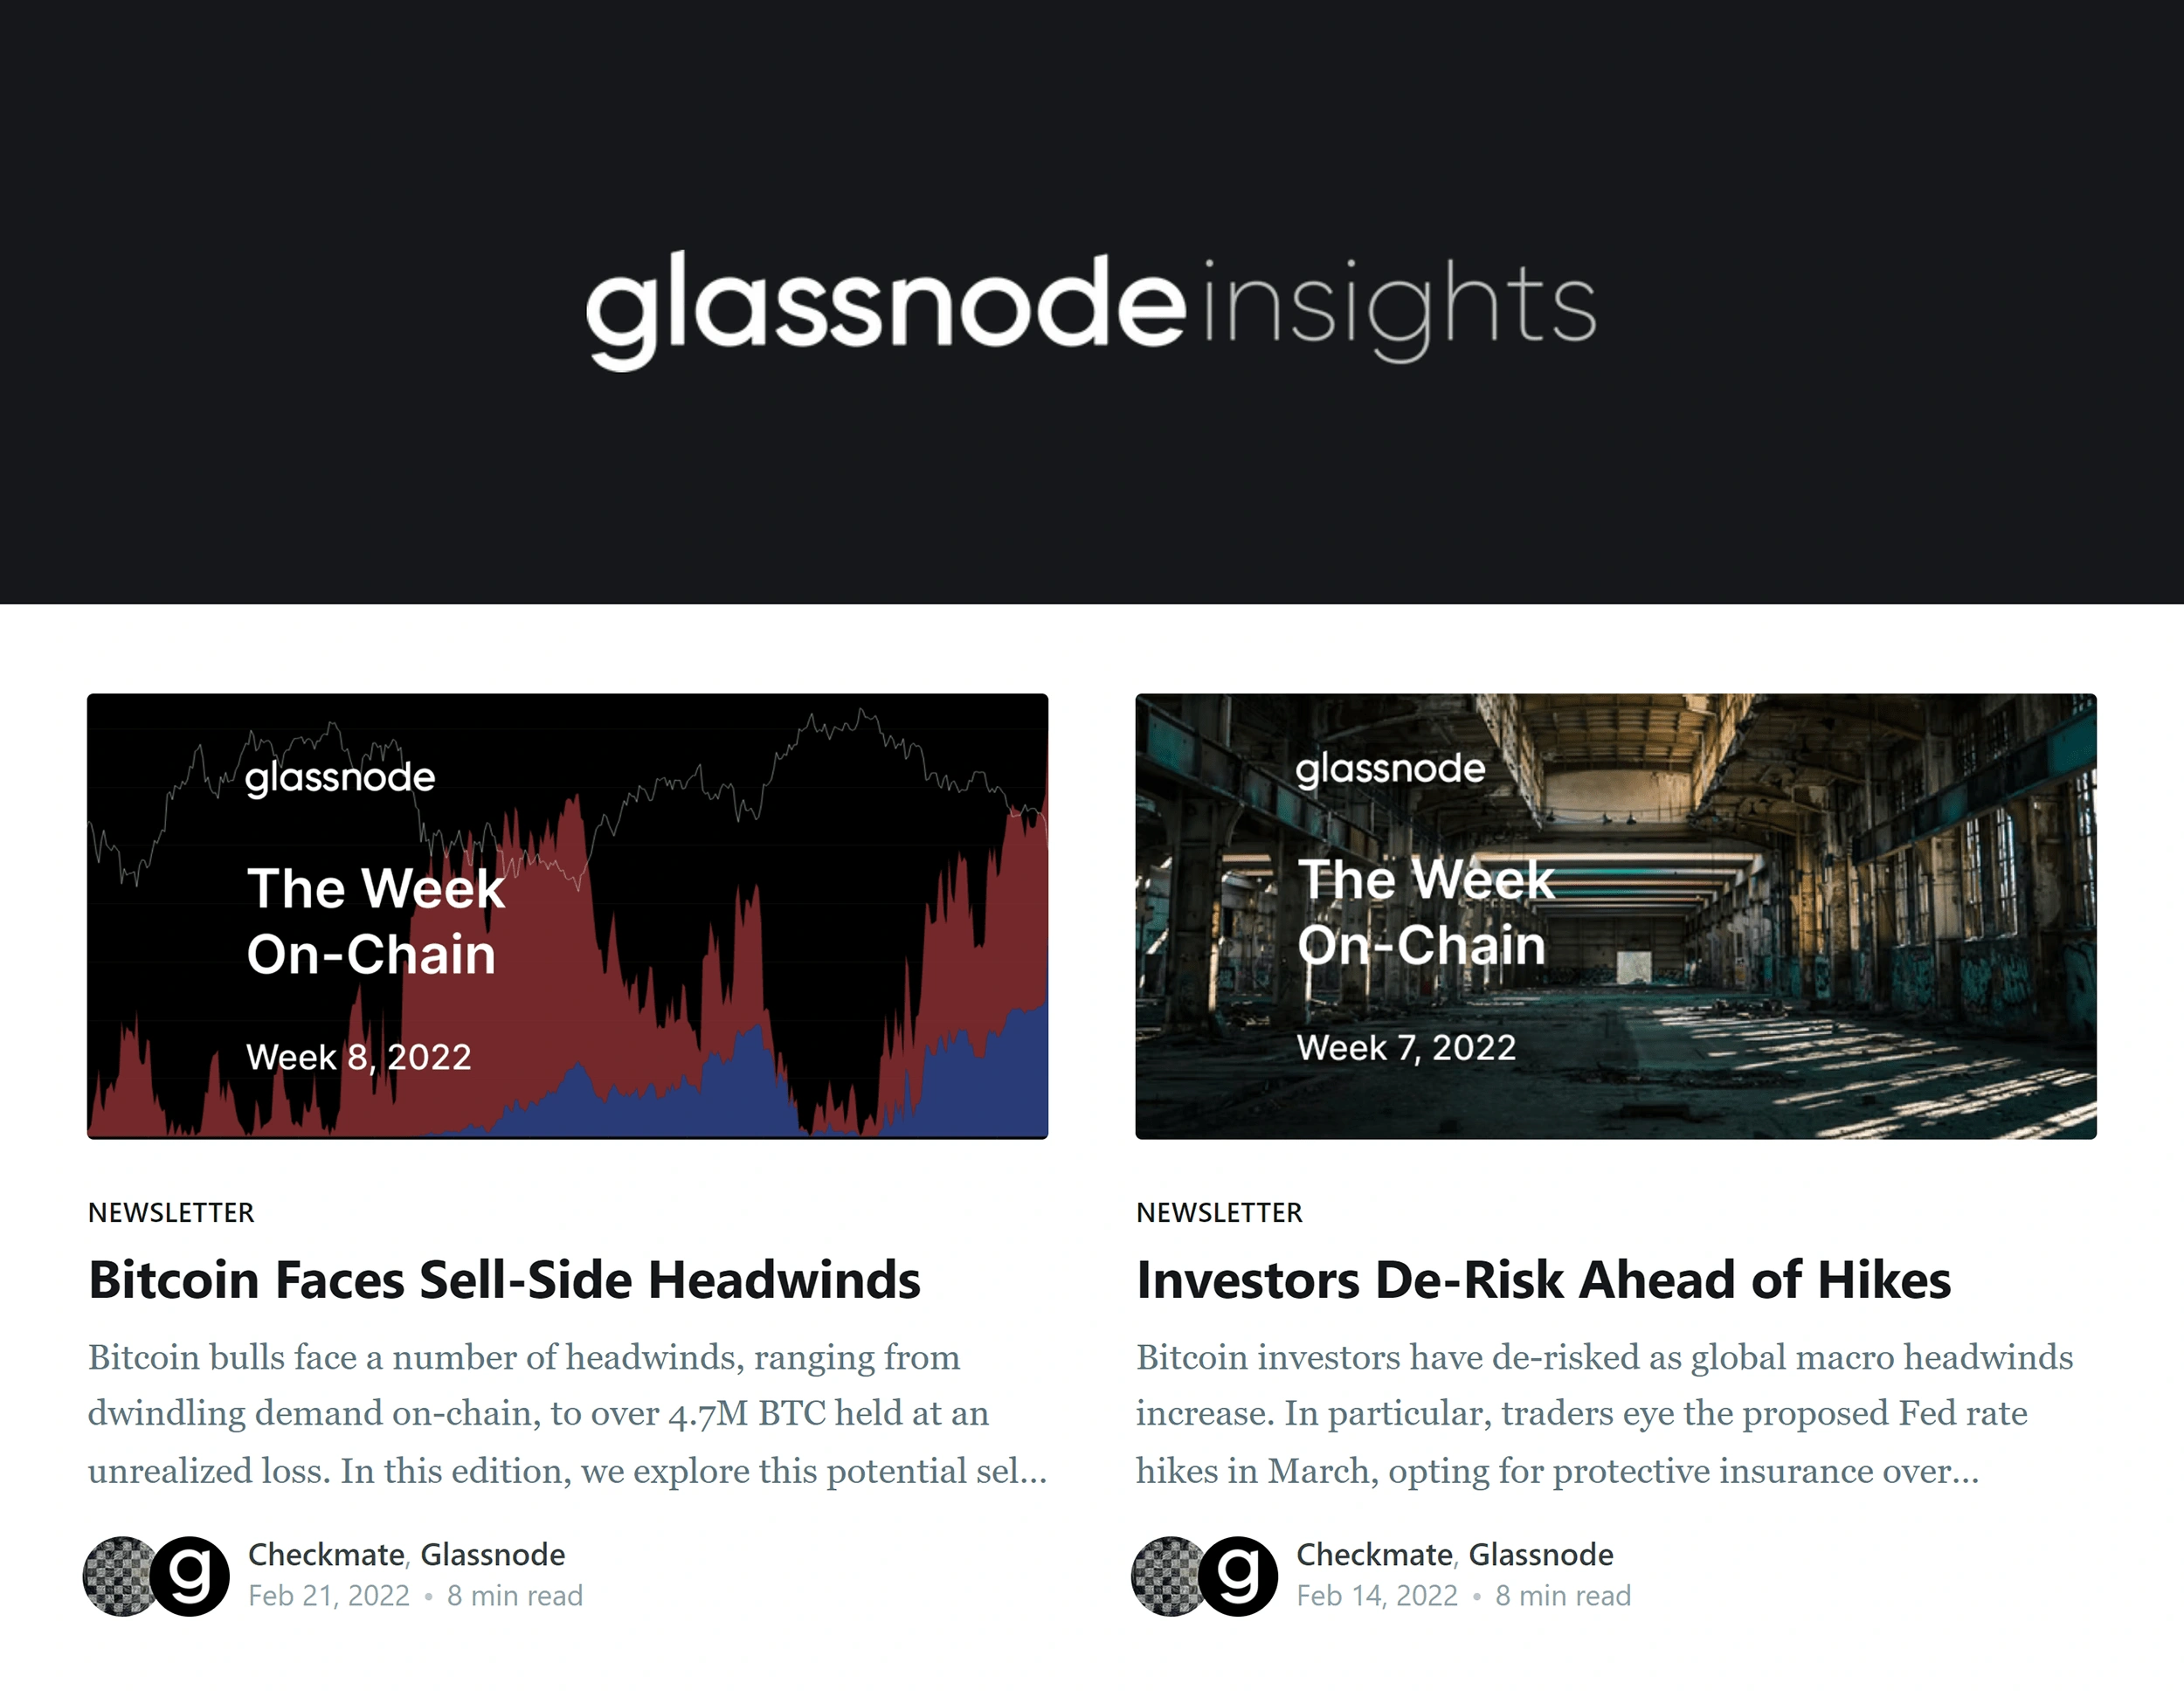 glassnode-insights-min.png